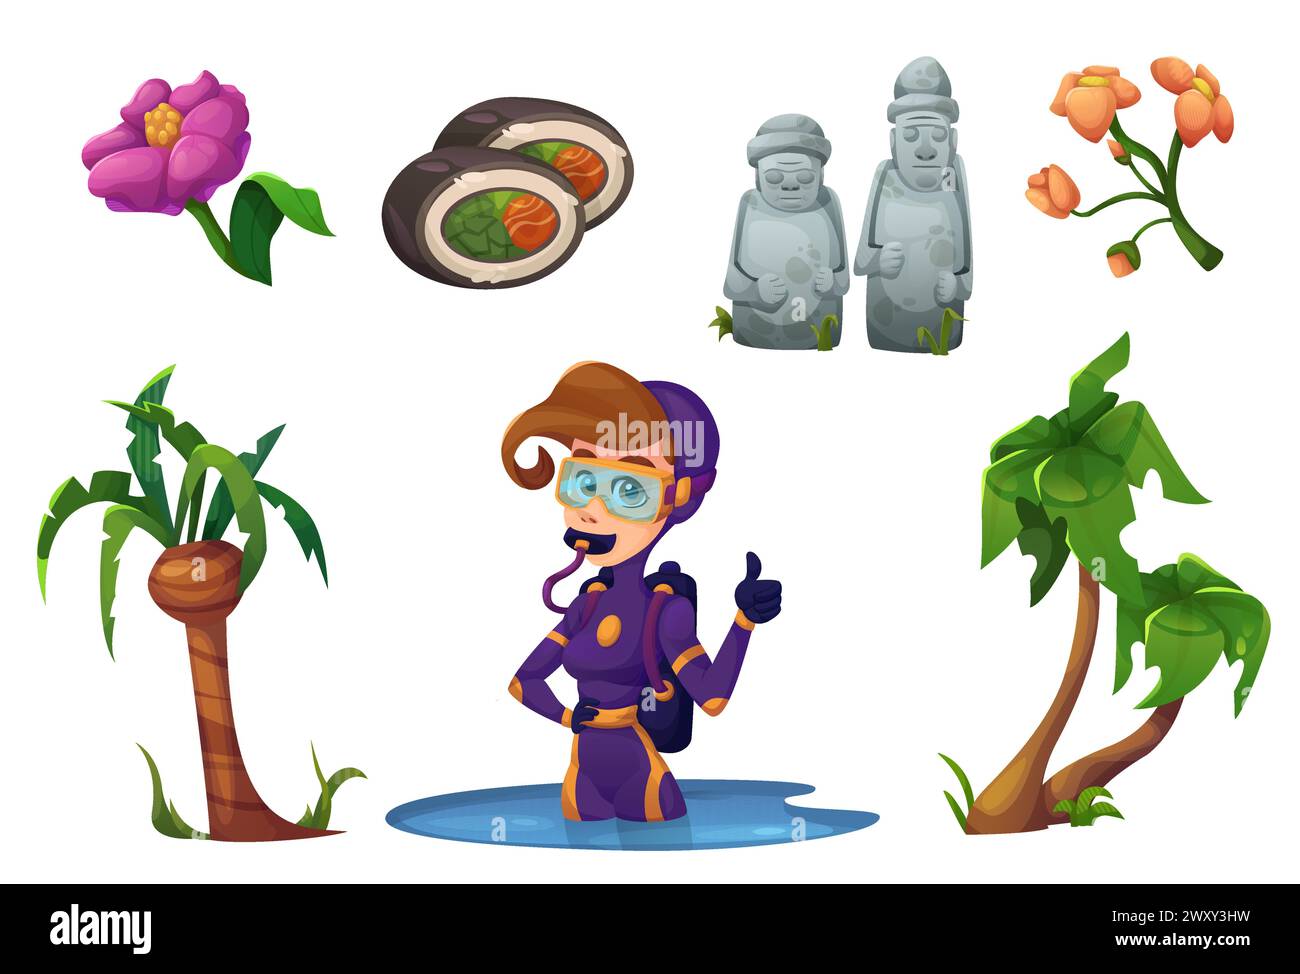 Symbole der Jeju-Insel auf weißem Hintergrund. Vektor-Karikaturillustration von südkoreanischen Inselpalmen, Blumen, Fischbrötchen, traditionelle Stein-dol Hareubang-Statuen, weibliche Taucherin Stock Vektor